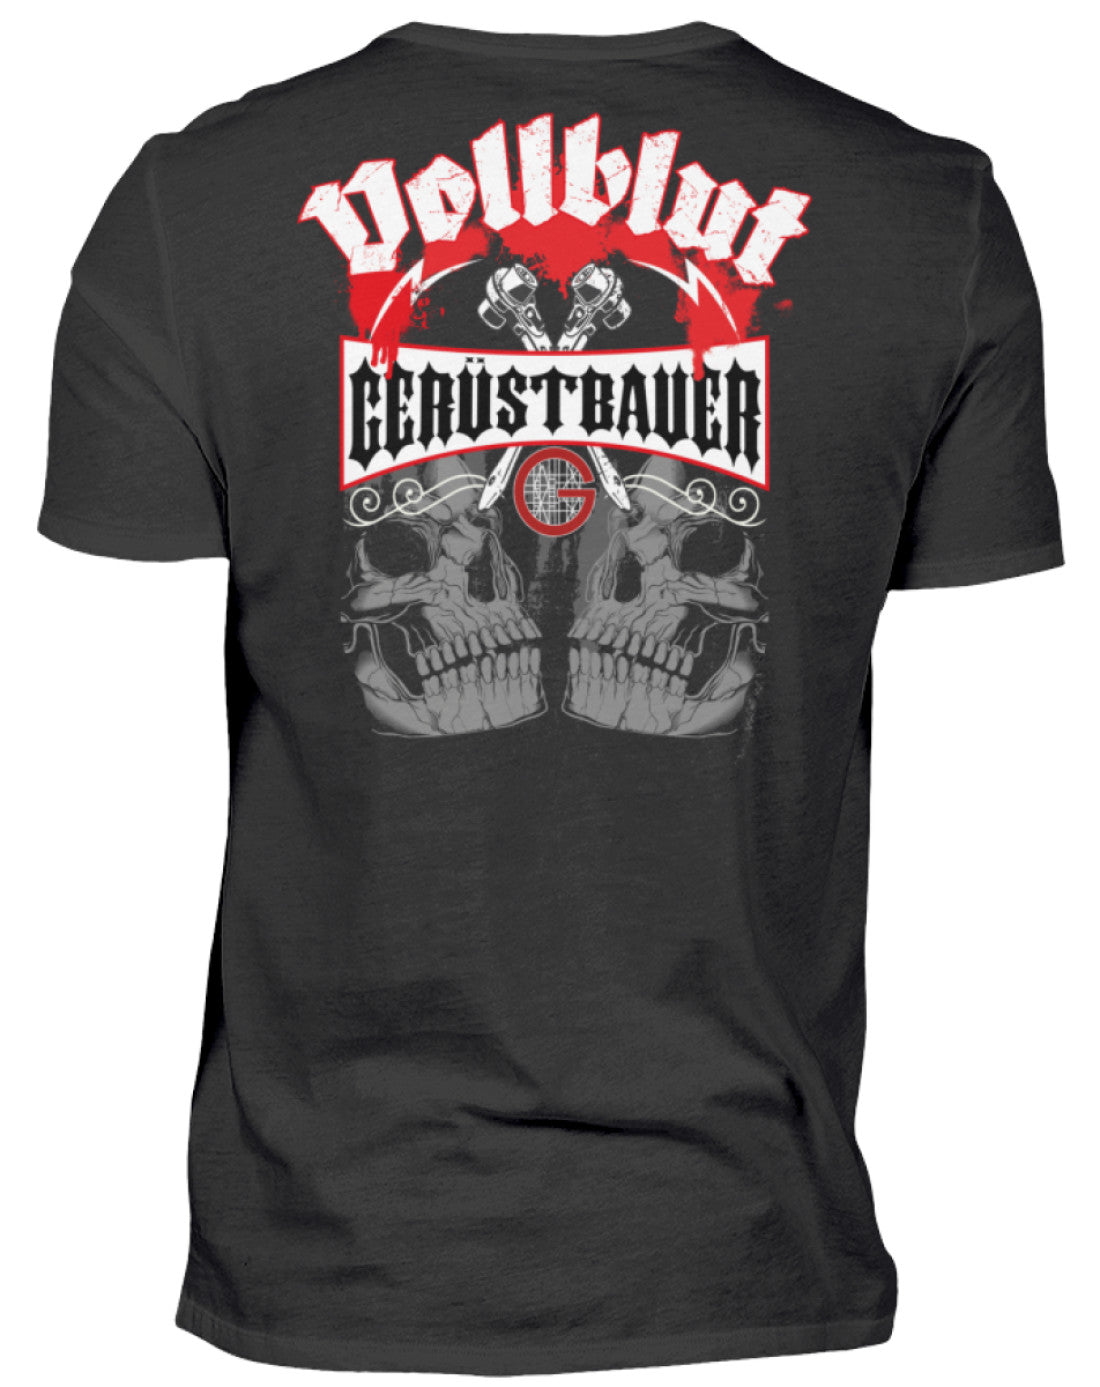 Vollblut Gerüstbauer €24.95 Gerüstbauer - Shop >>